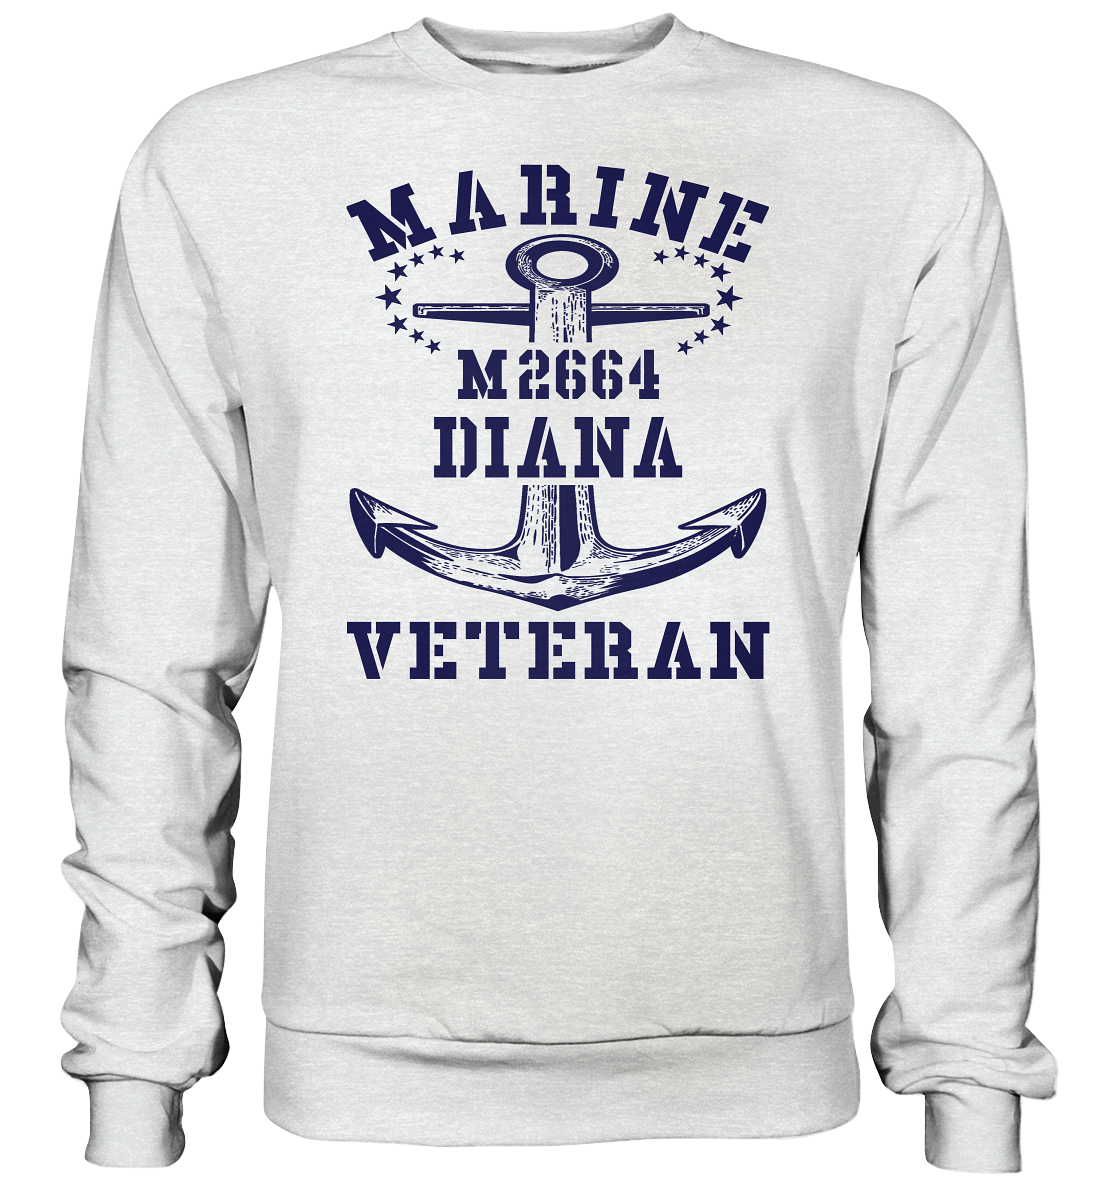 BiMi M2664 DIANA Marine Veteran - Premium Sweatshirt